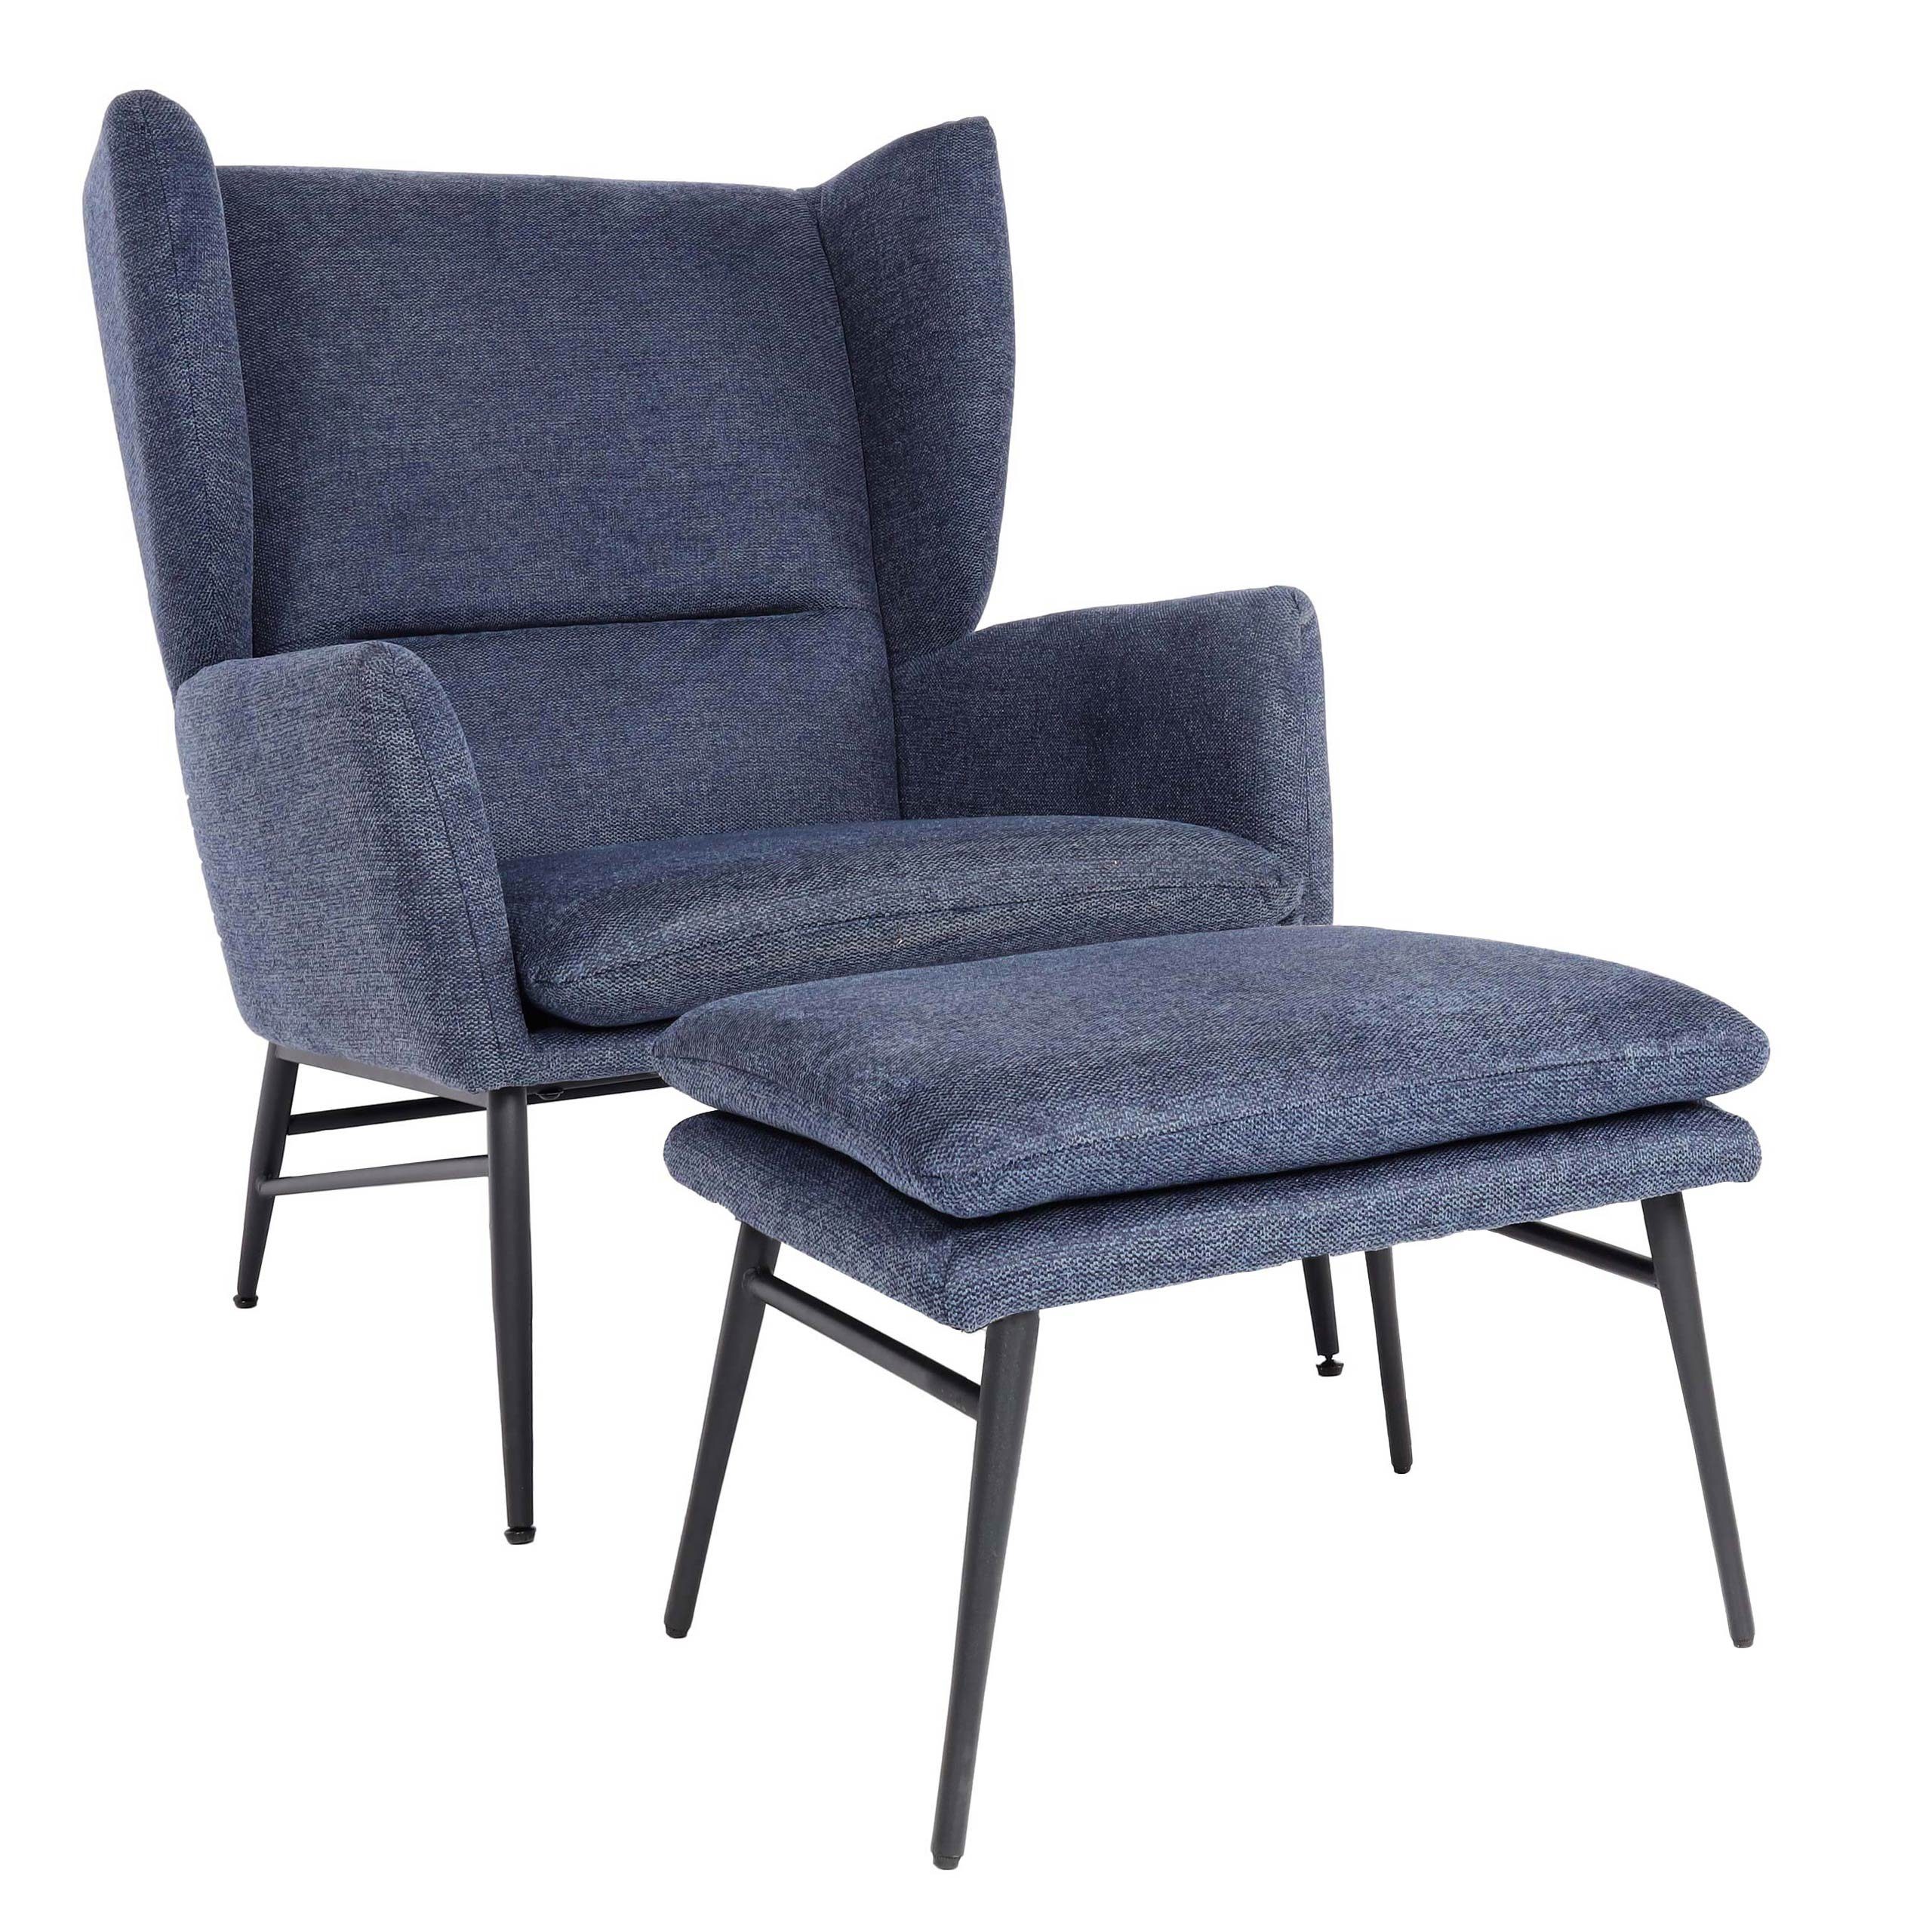 MCW Loungesessel MCW-L62-mO, Extra breite abnehmbar blau Sitzkissen Sitzfläche